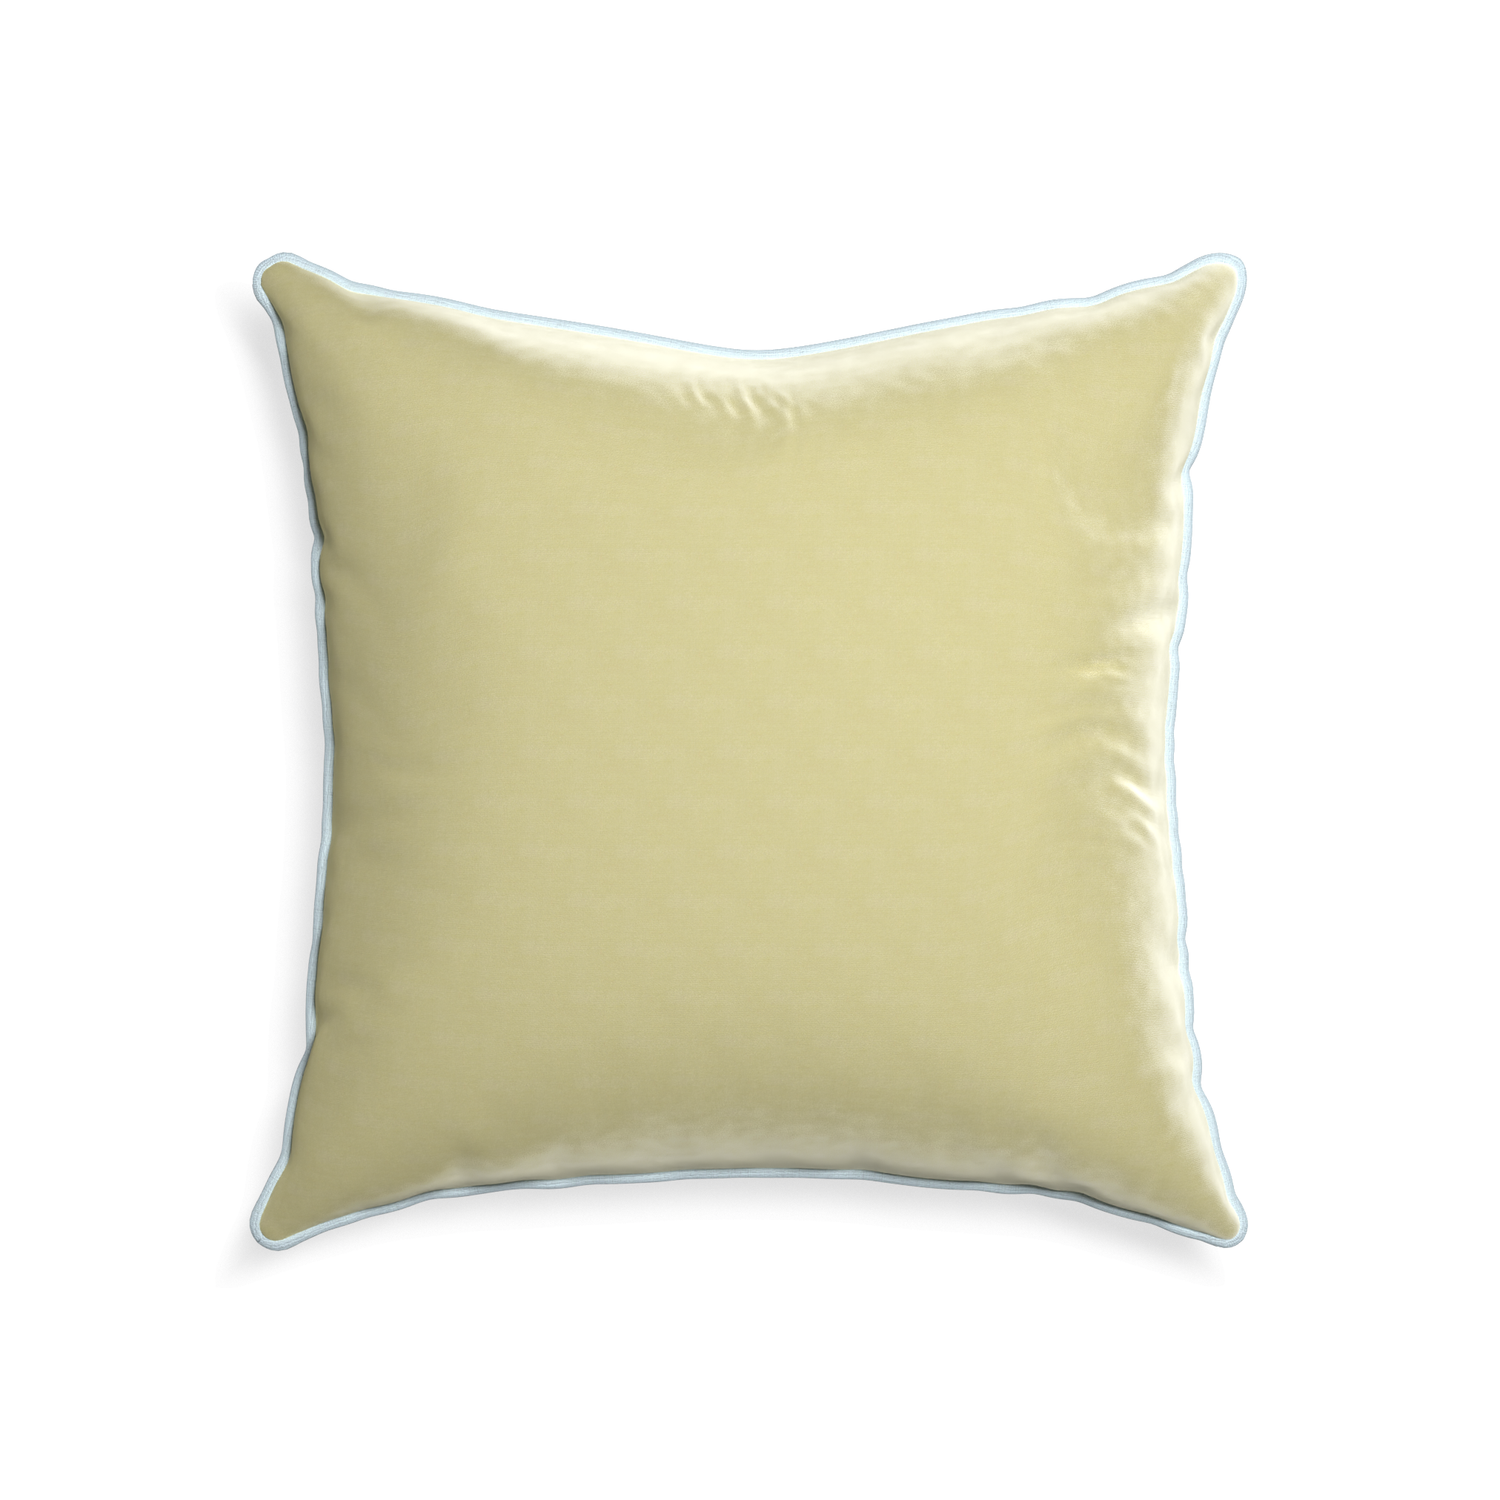 square light green velvet pillow with light blue piping